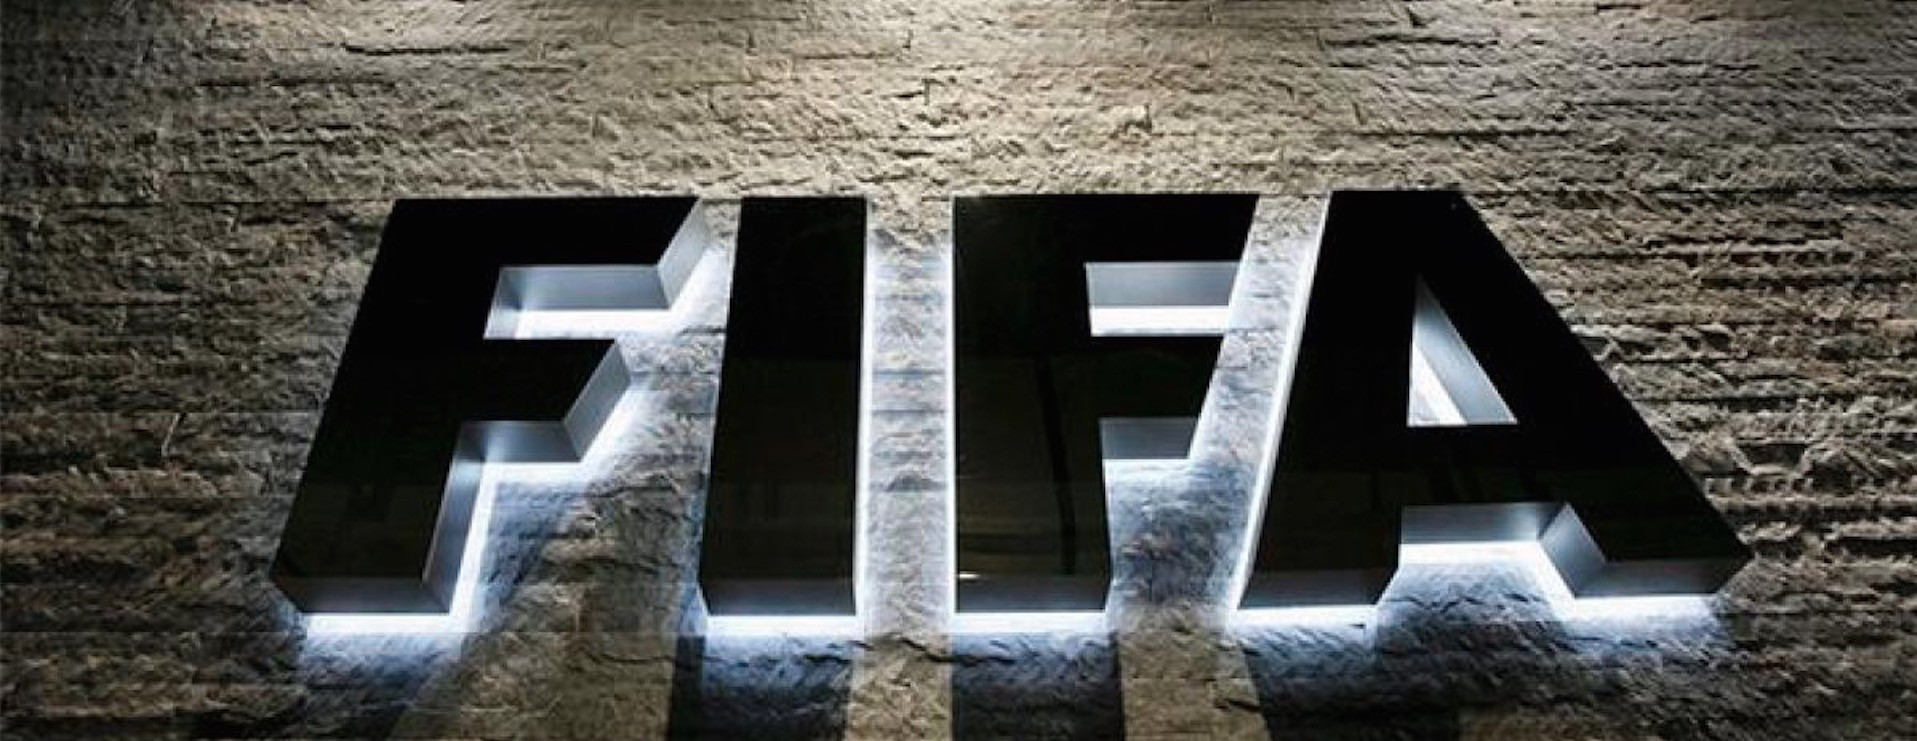 Μήνυμα FIFA σε Ελλάδα: Καμιά αλλαγή στην ΚΕΔ, μένει ο Περέιρα